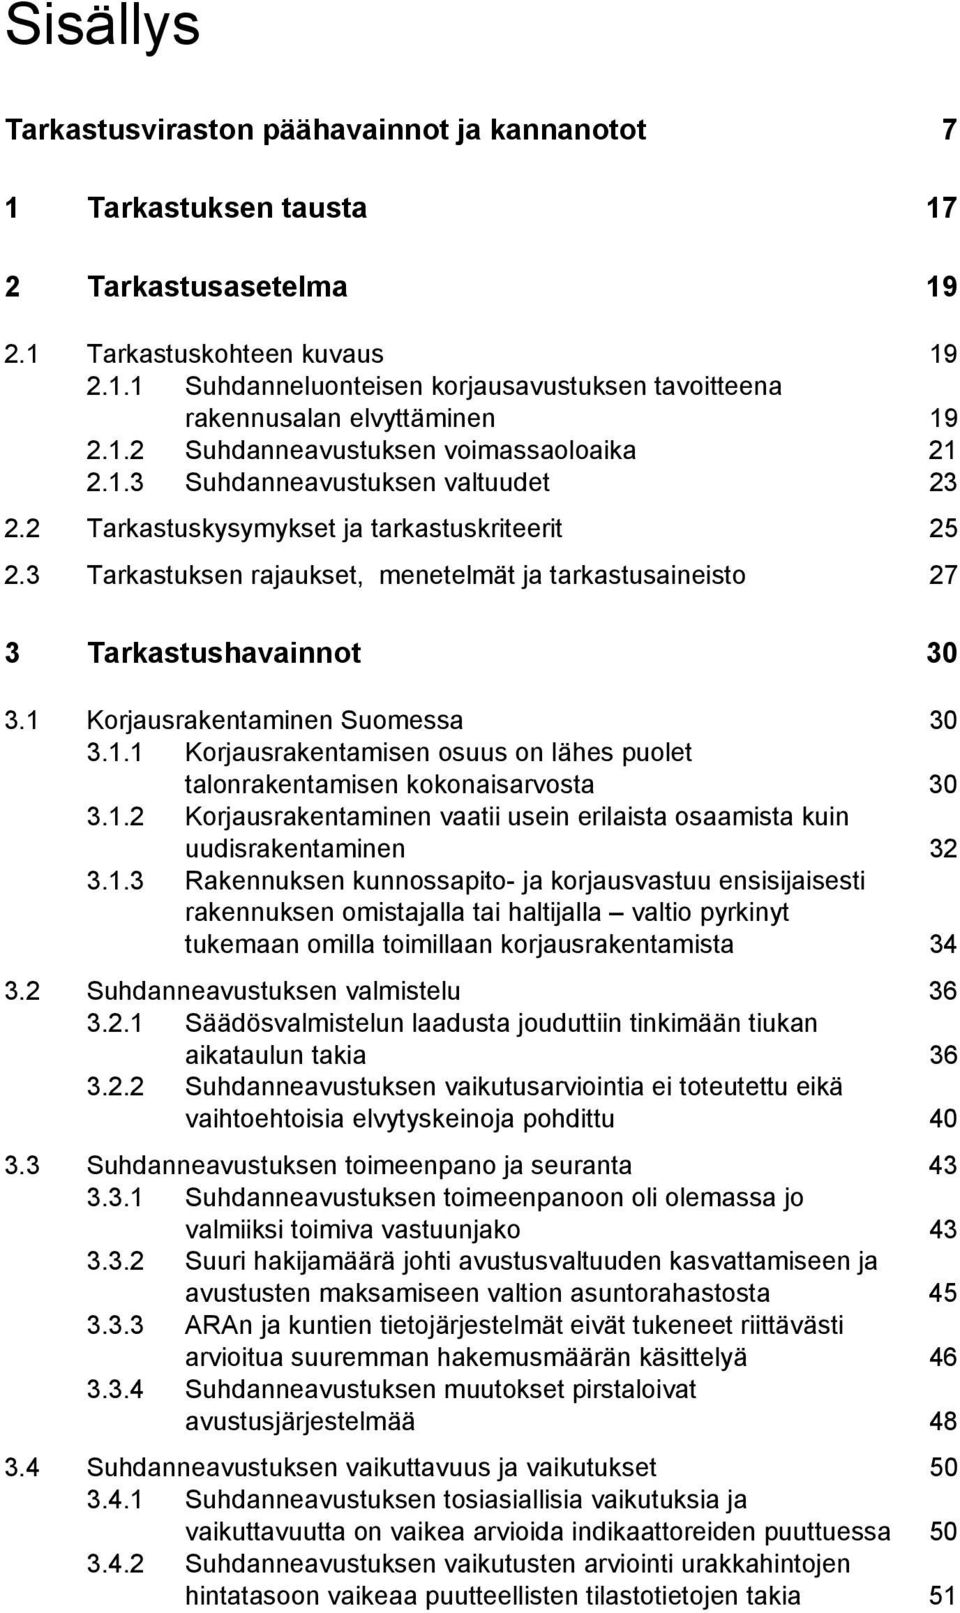 1 Korjausrakentaminen Suomessa 30 3.1.1 Korjausrakentamisen osuus on lähes puolet 3.1.2 talonrakentamisen kokonaisarvosta Korjausrakentaminen vaatii usein erilaista osaamista kuin 30 uudisrakentaminen 32 3.